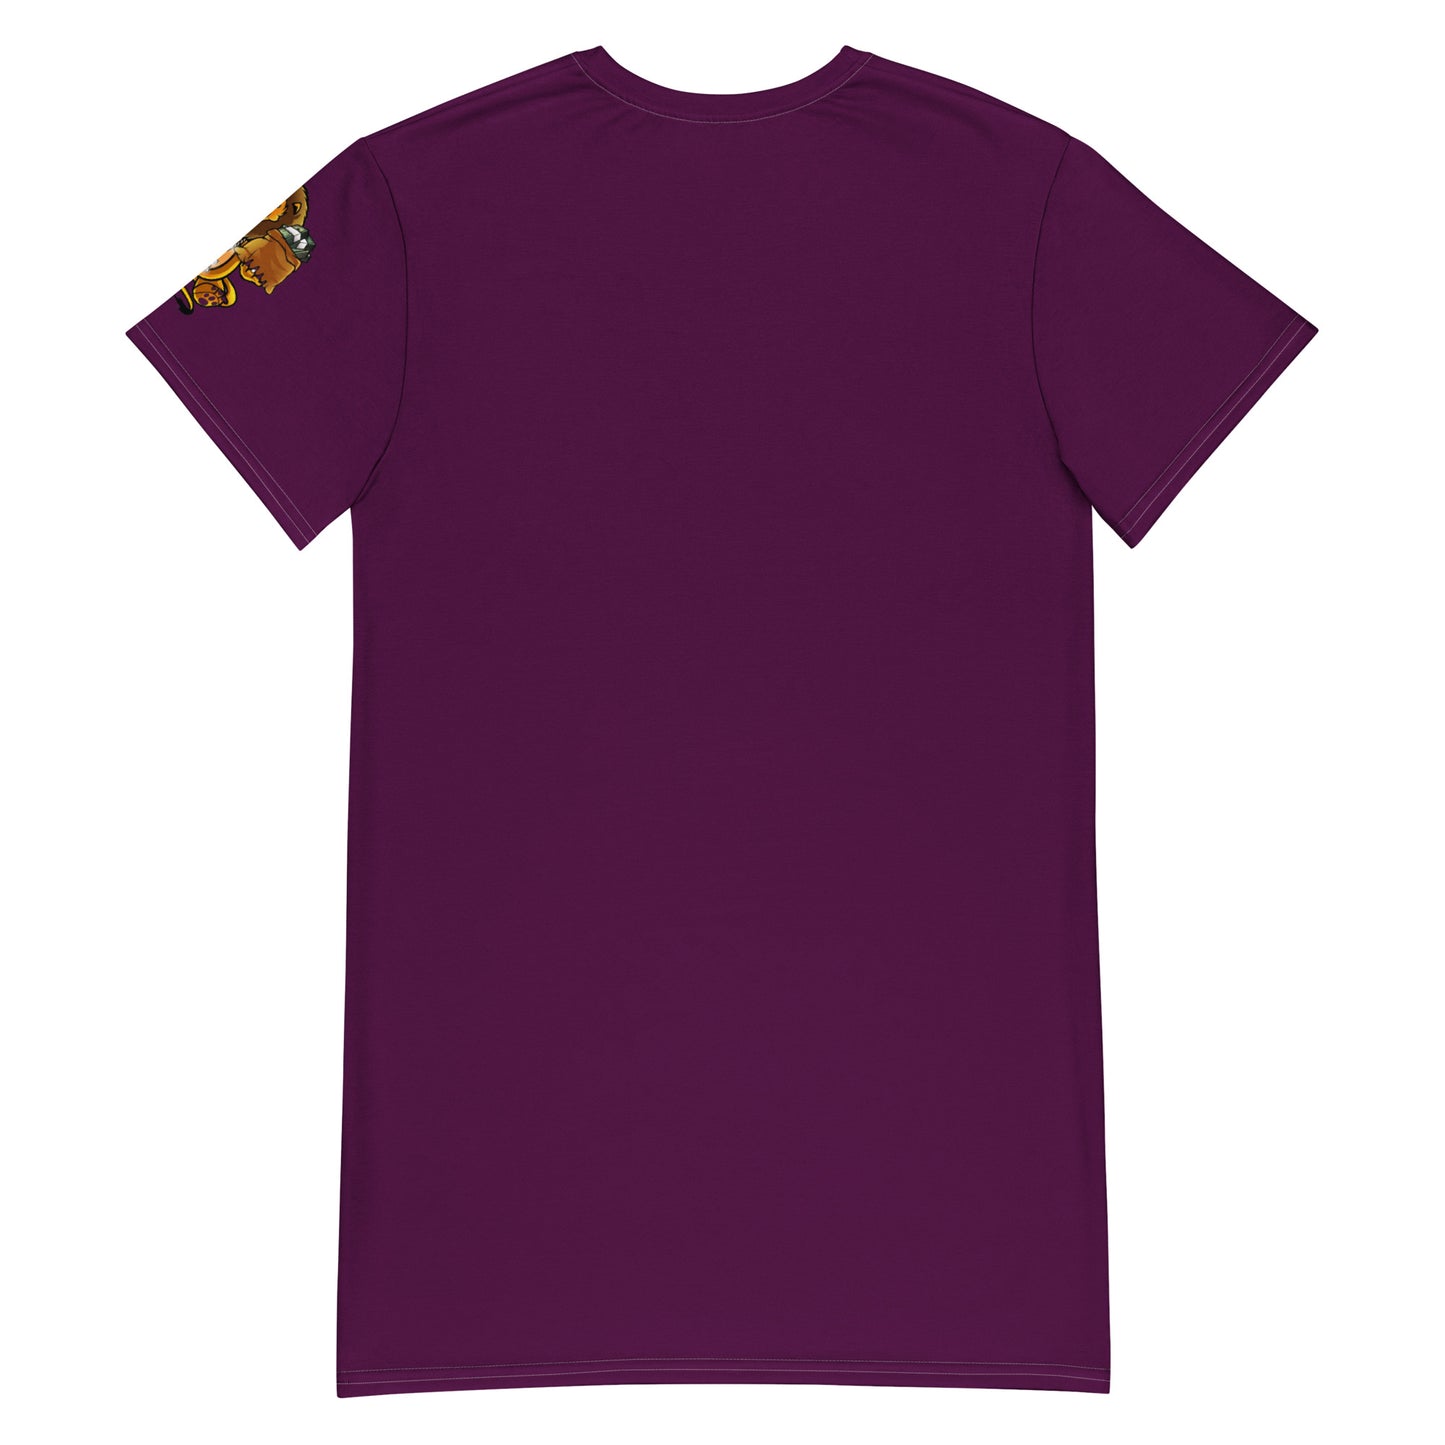 Same Goals Different Struggles Women’s Tyrian Purple T-shirt dress